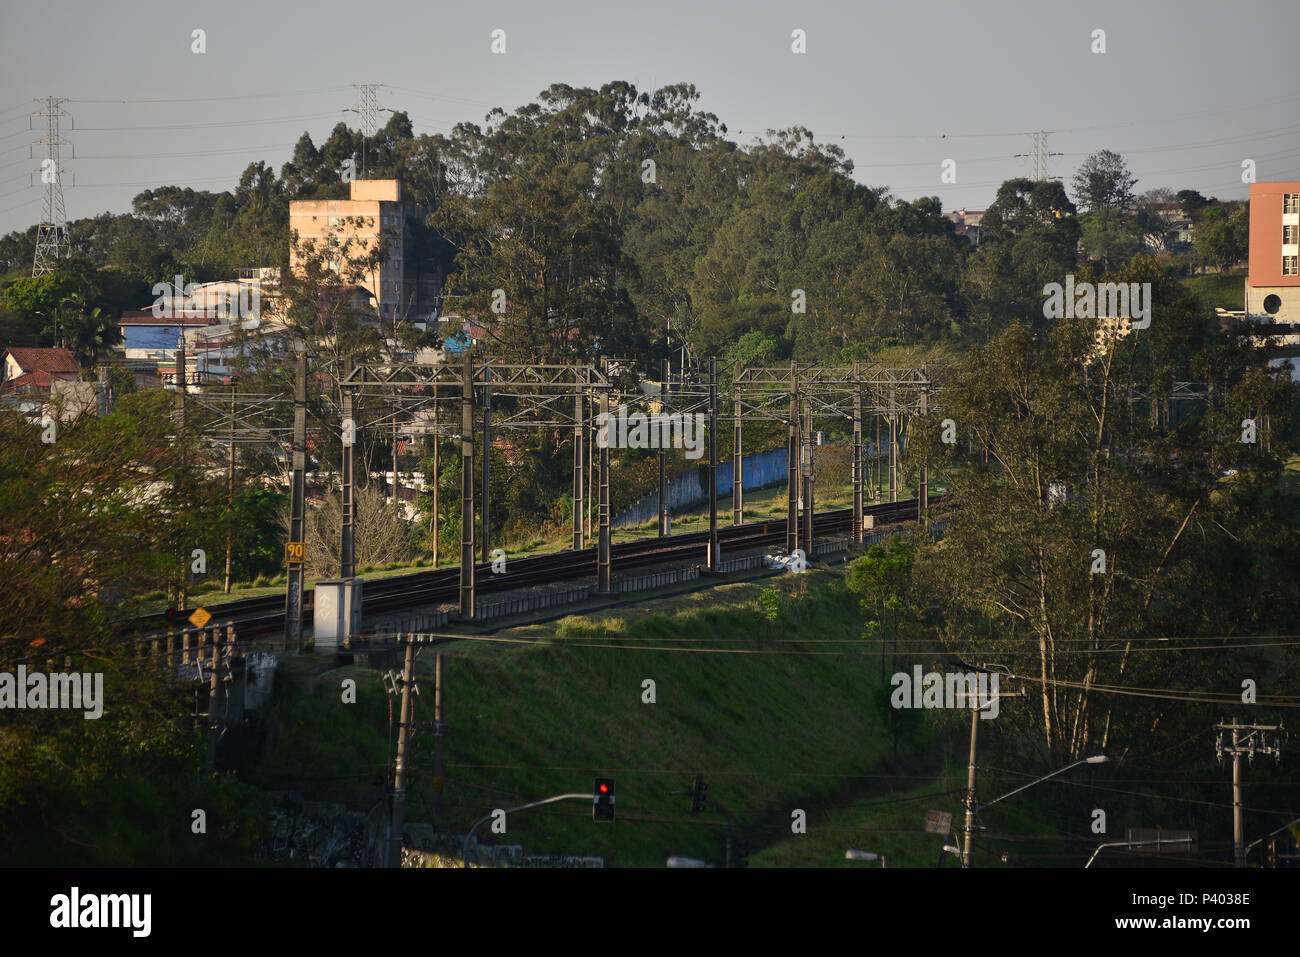 Ferrovia da linha 9 da CPTM, por onde passa os trens em direção a estação Grajau, zona sul da cidade de São Paulo. Stock Photo